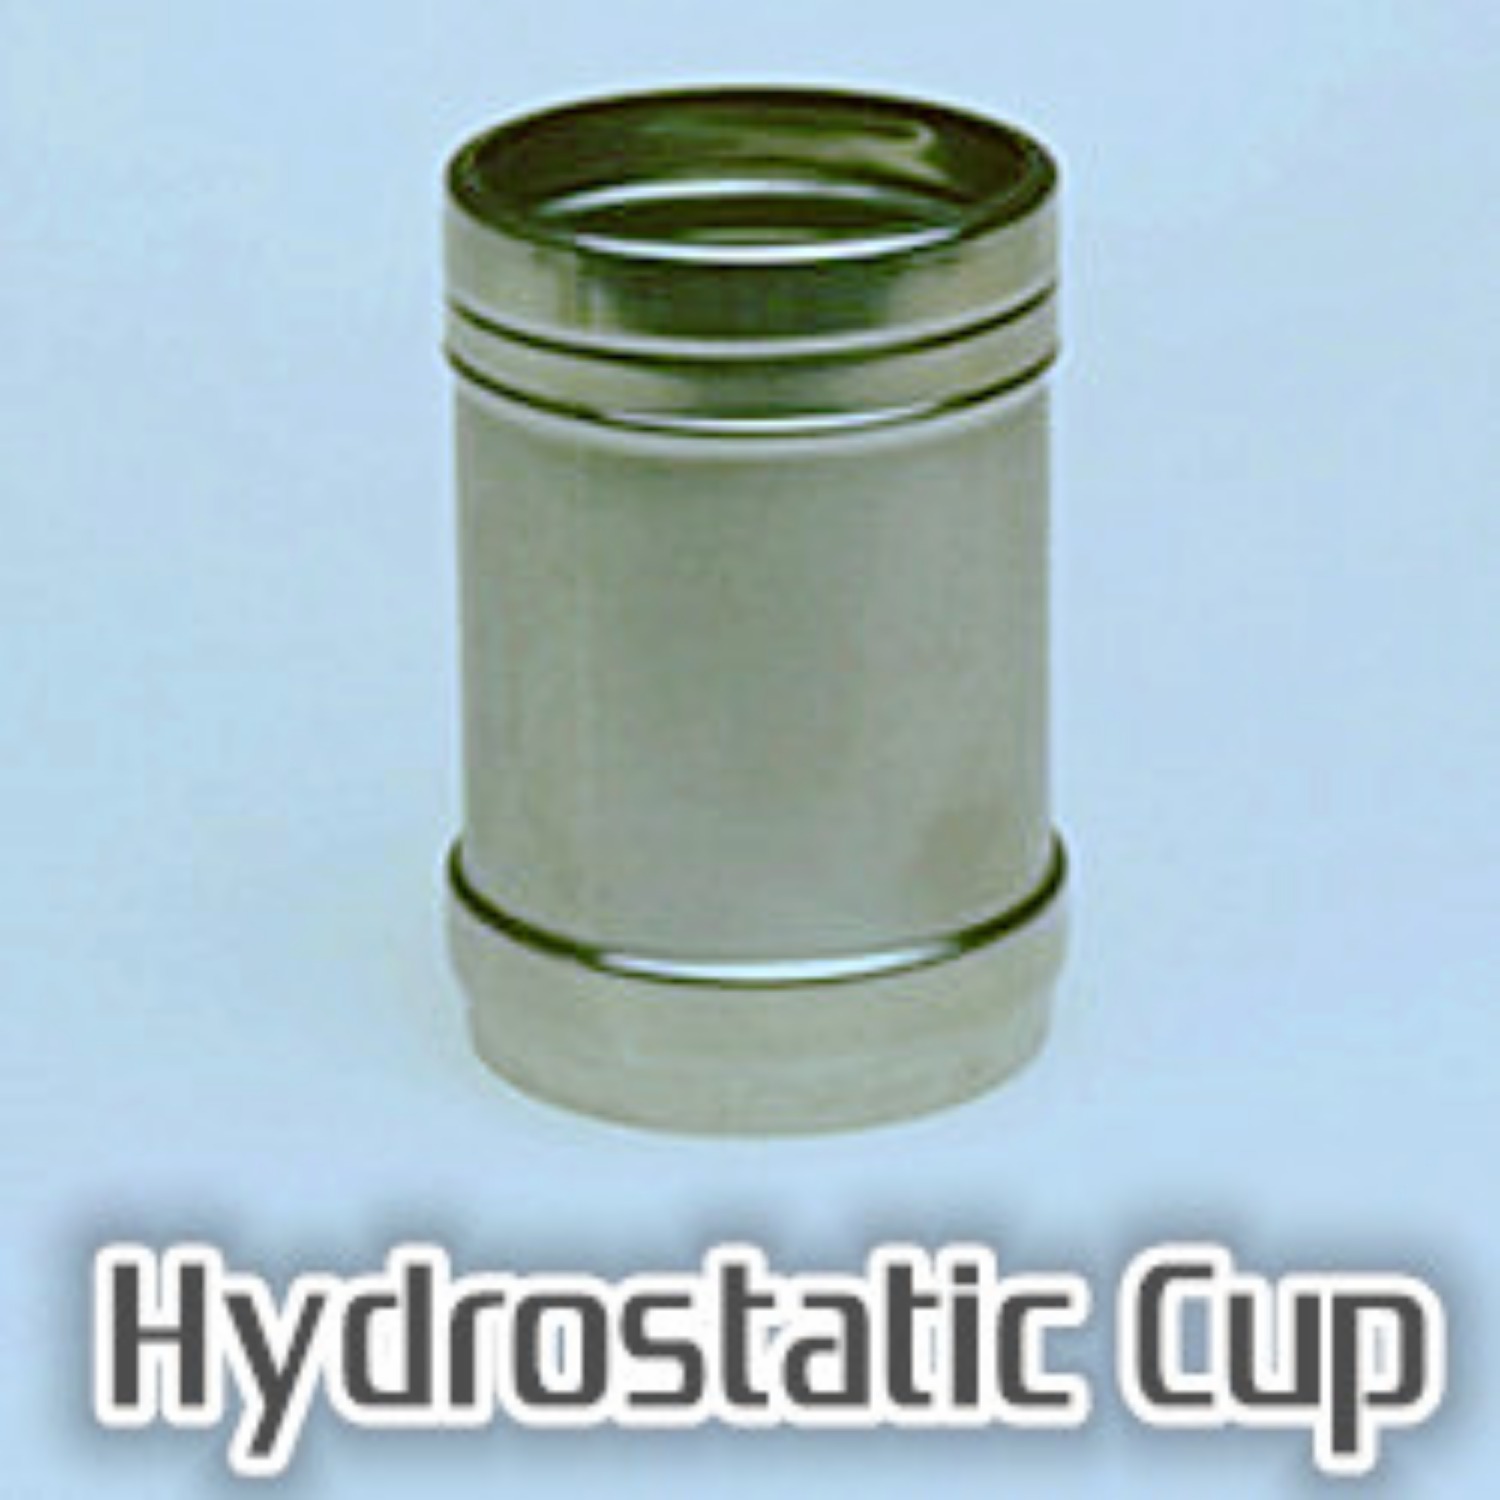 하이드로스태틱 컵